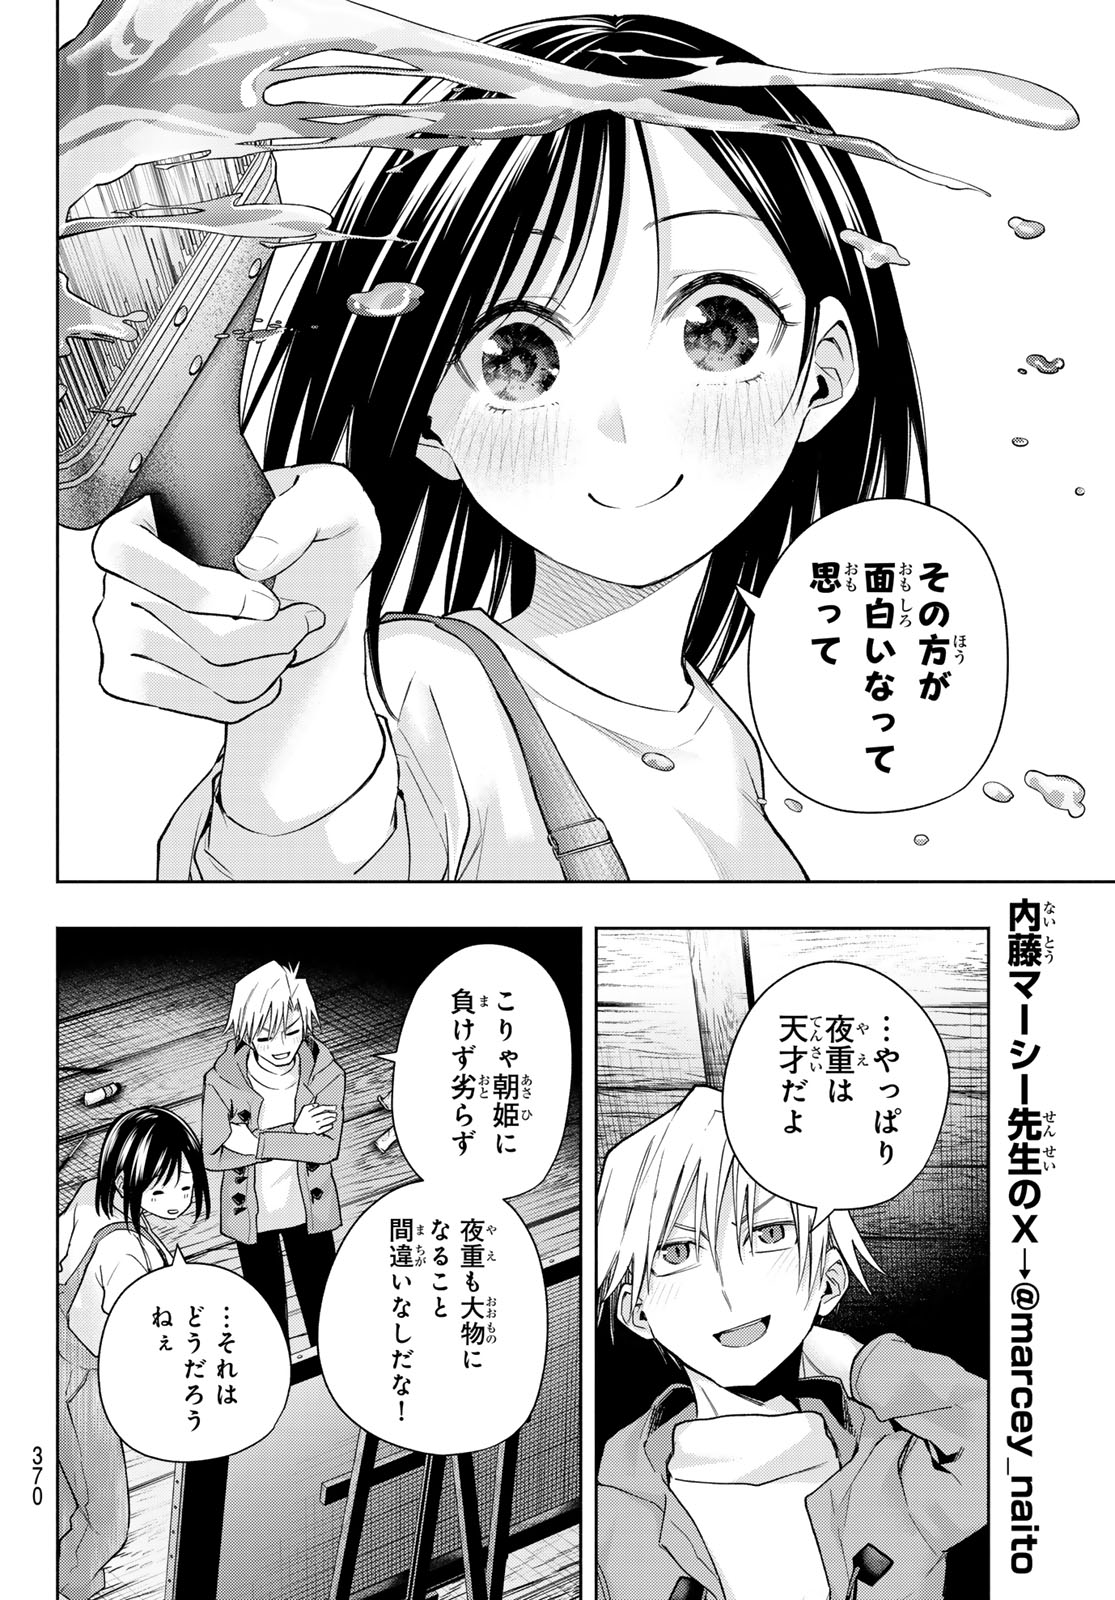 Amagami-san Chi no Enmusubi - Chapter 139 - Page 12